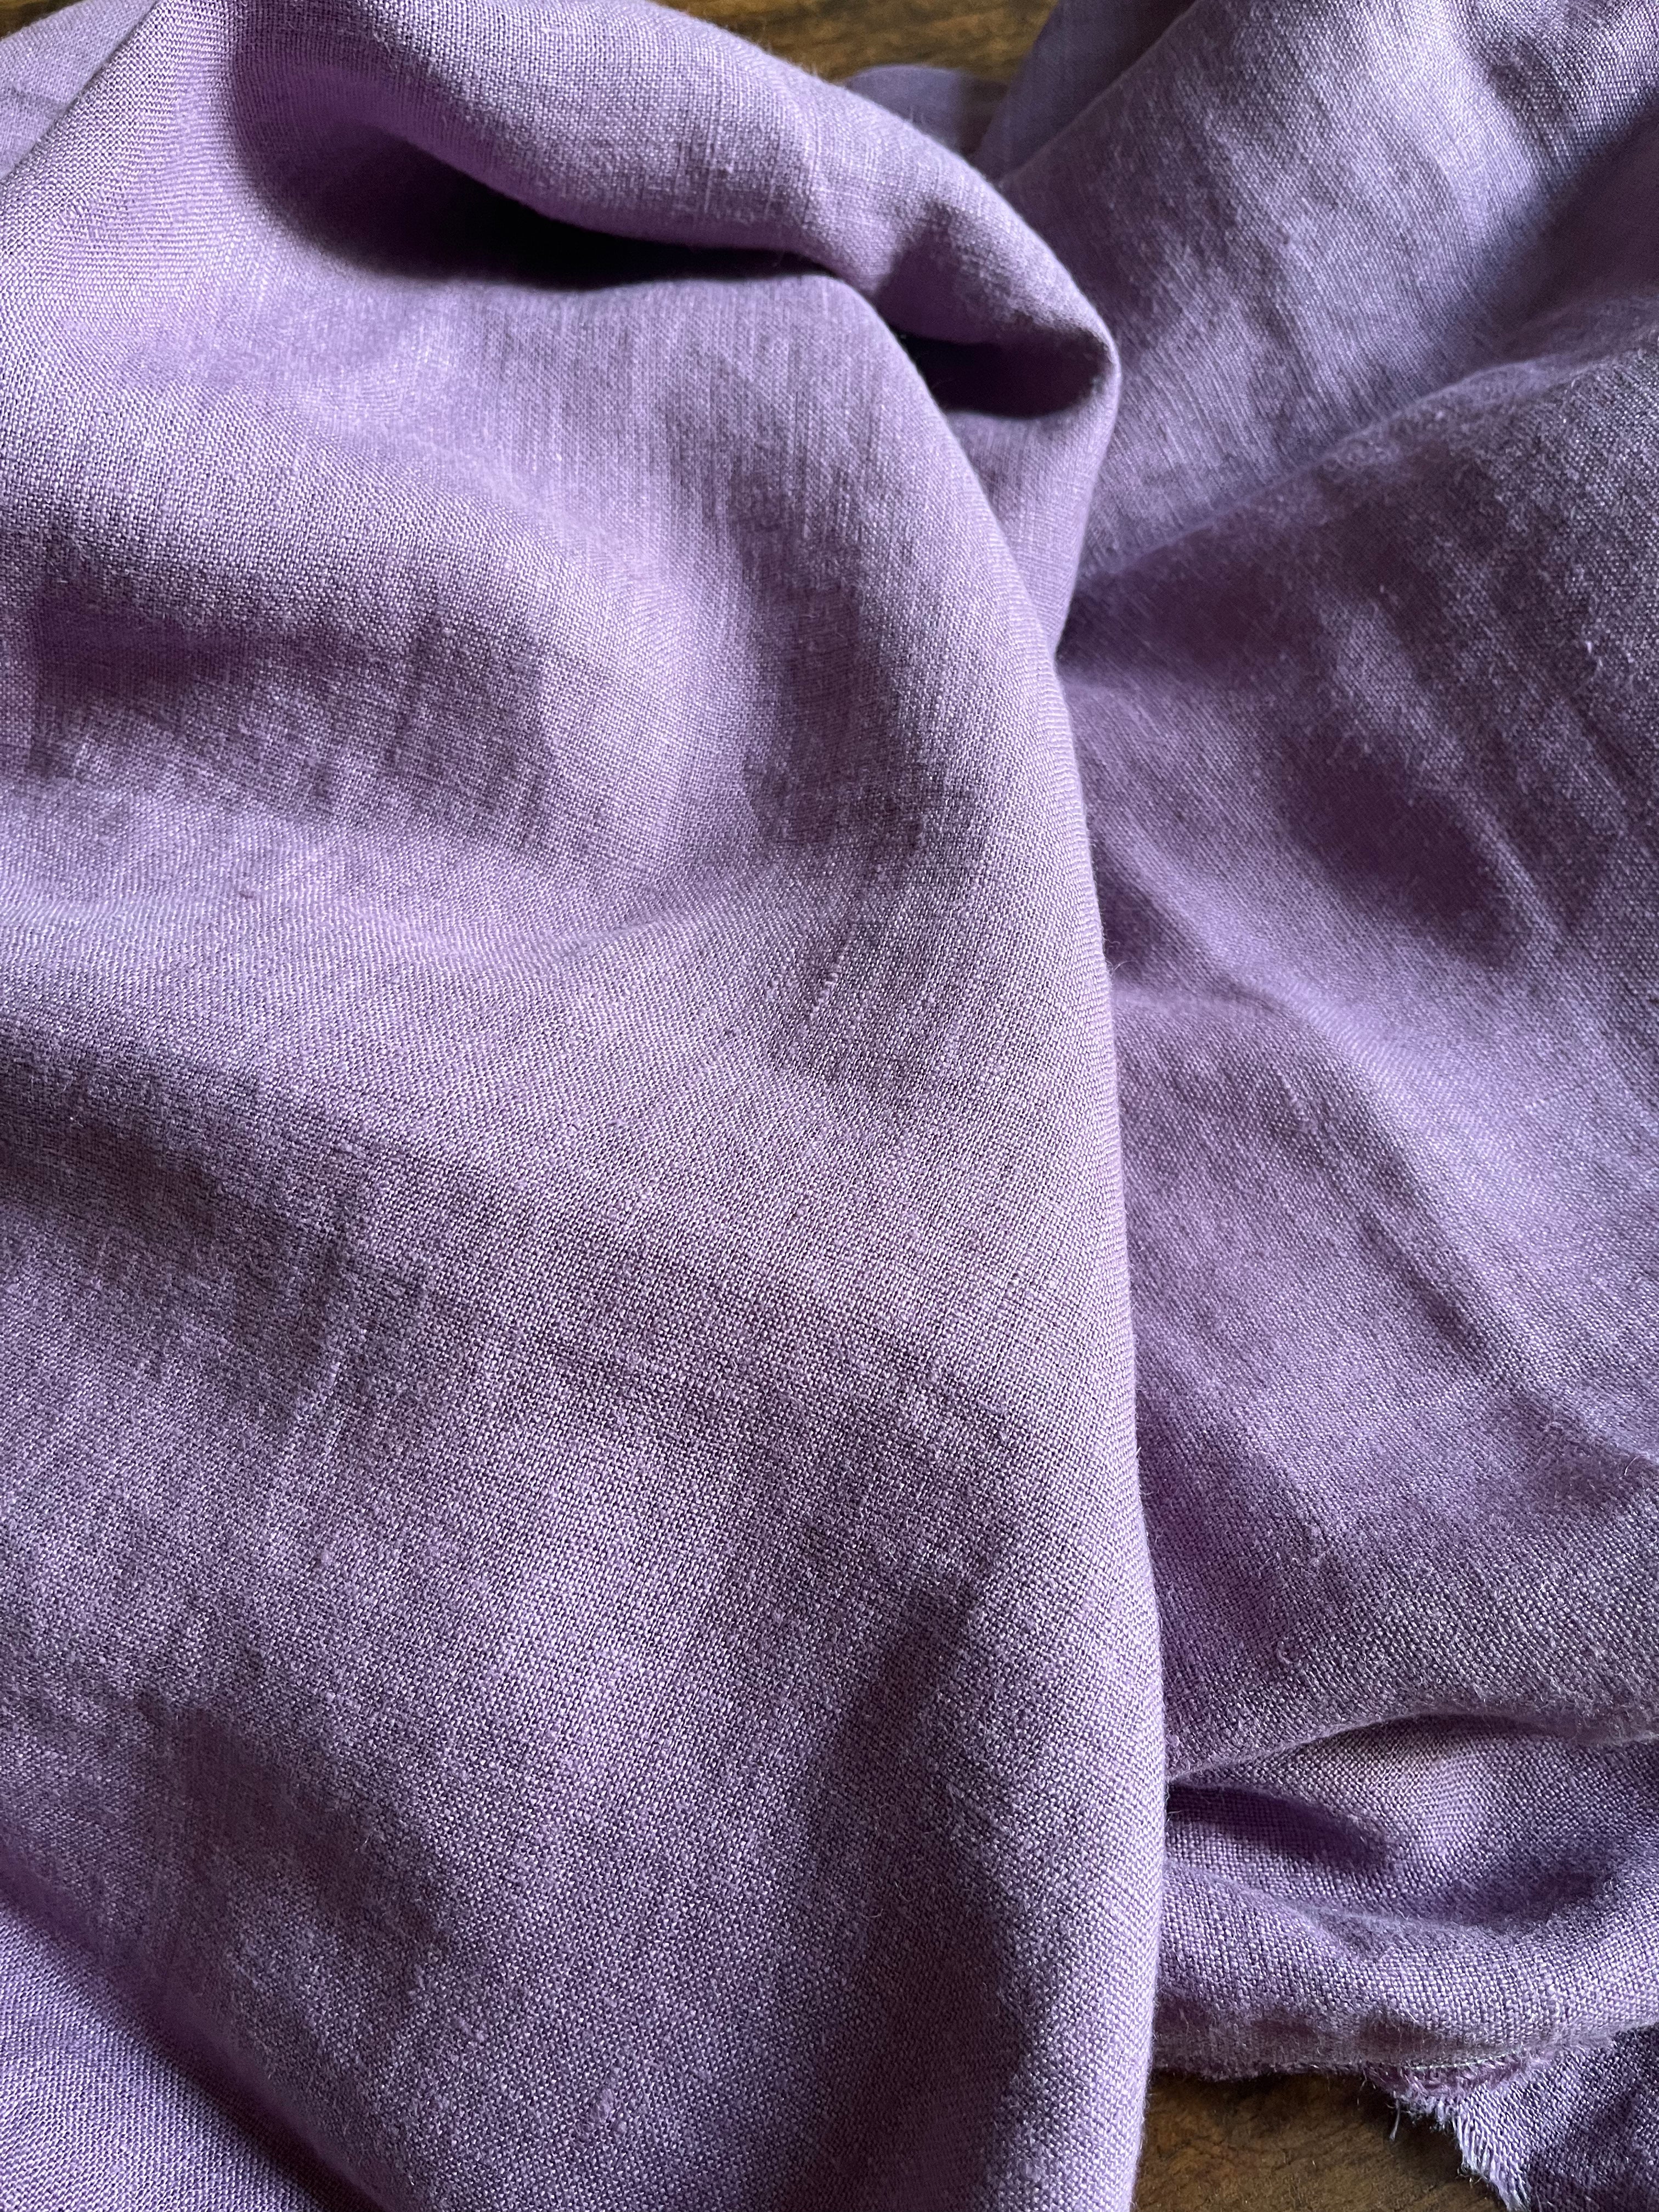 4,1 x 1,5 Meter Violett: extra breites und schweres washed Leinen in frischem Lavendelton